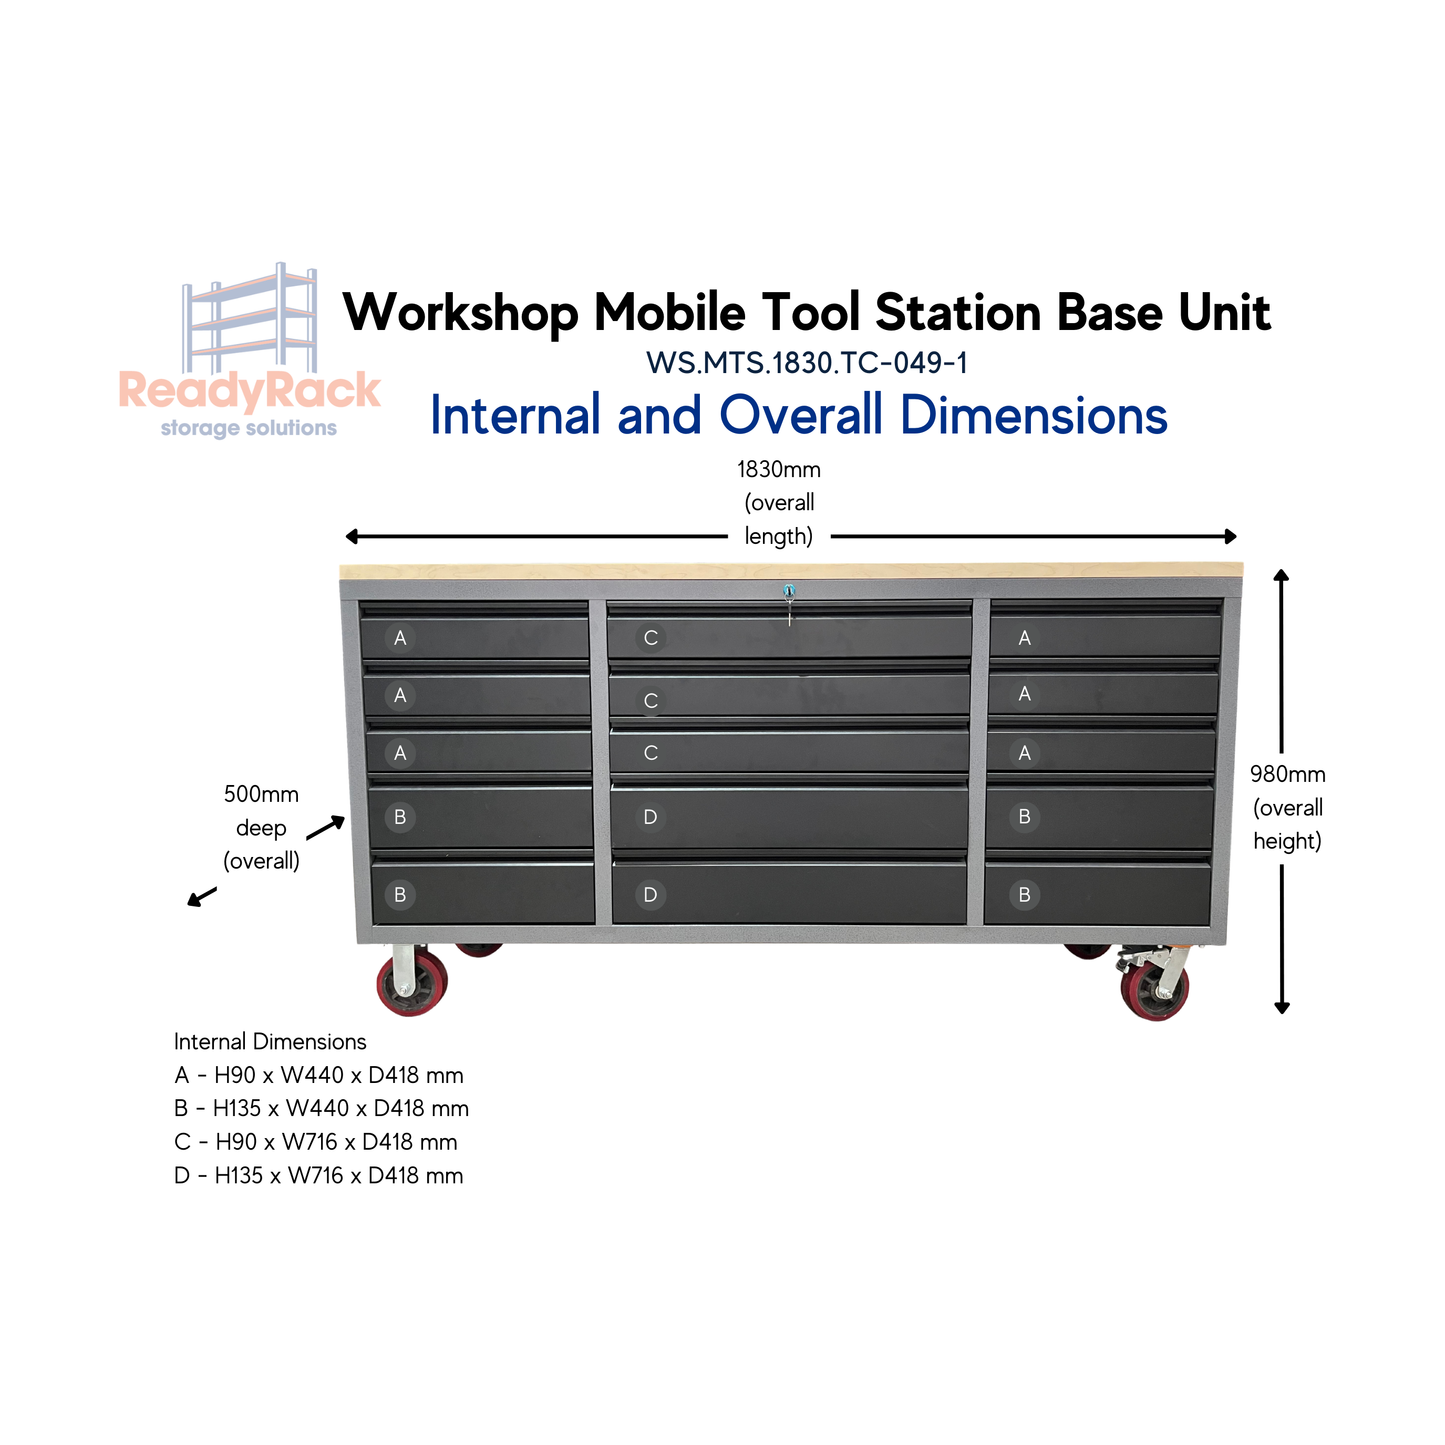 ReadyRack Workshop Mobile Tool Station Base Unit